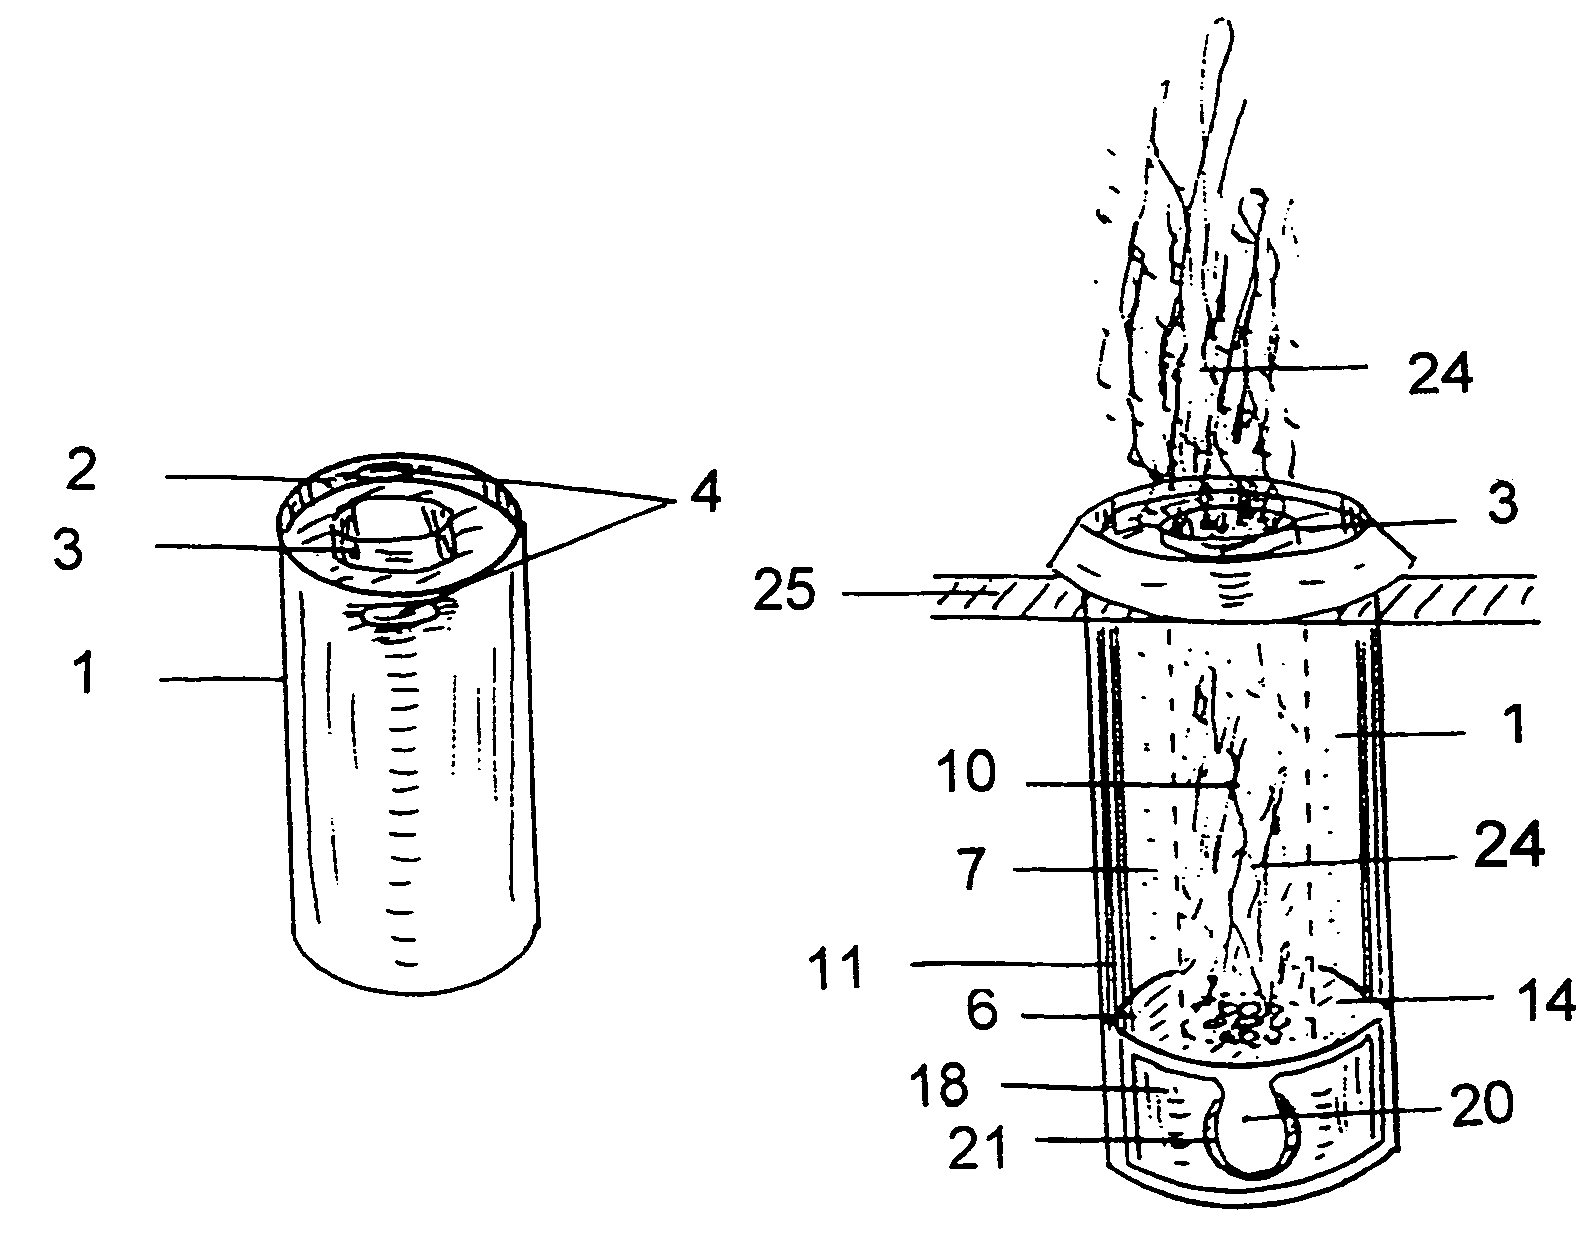 Log cartridge burning system